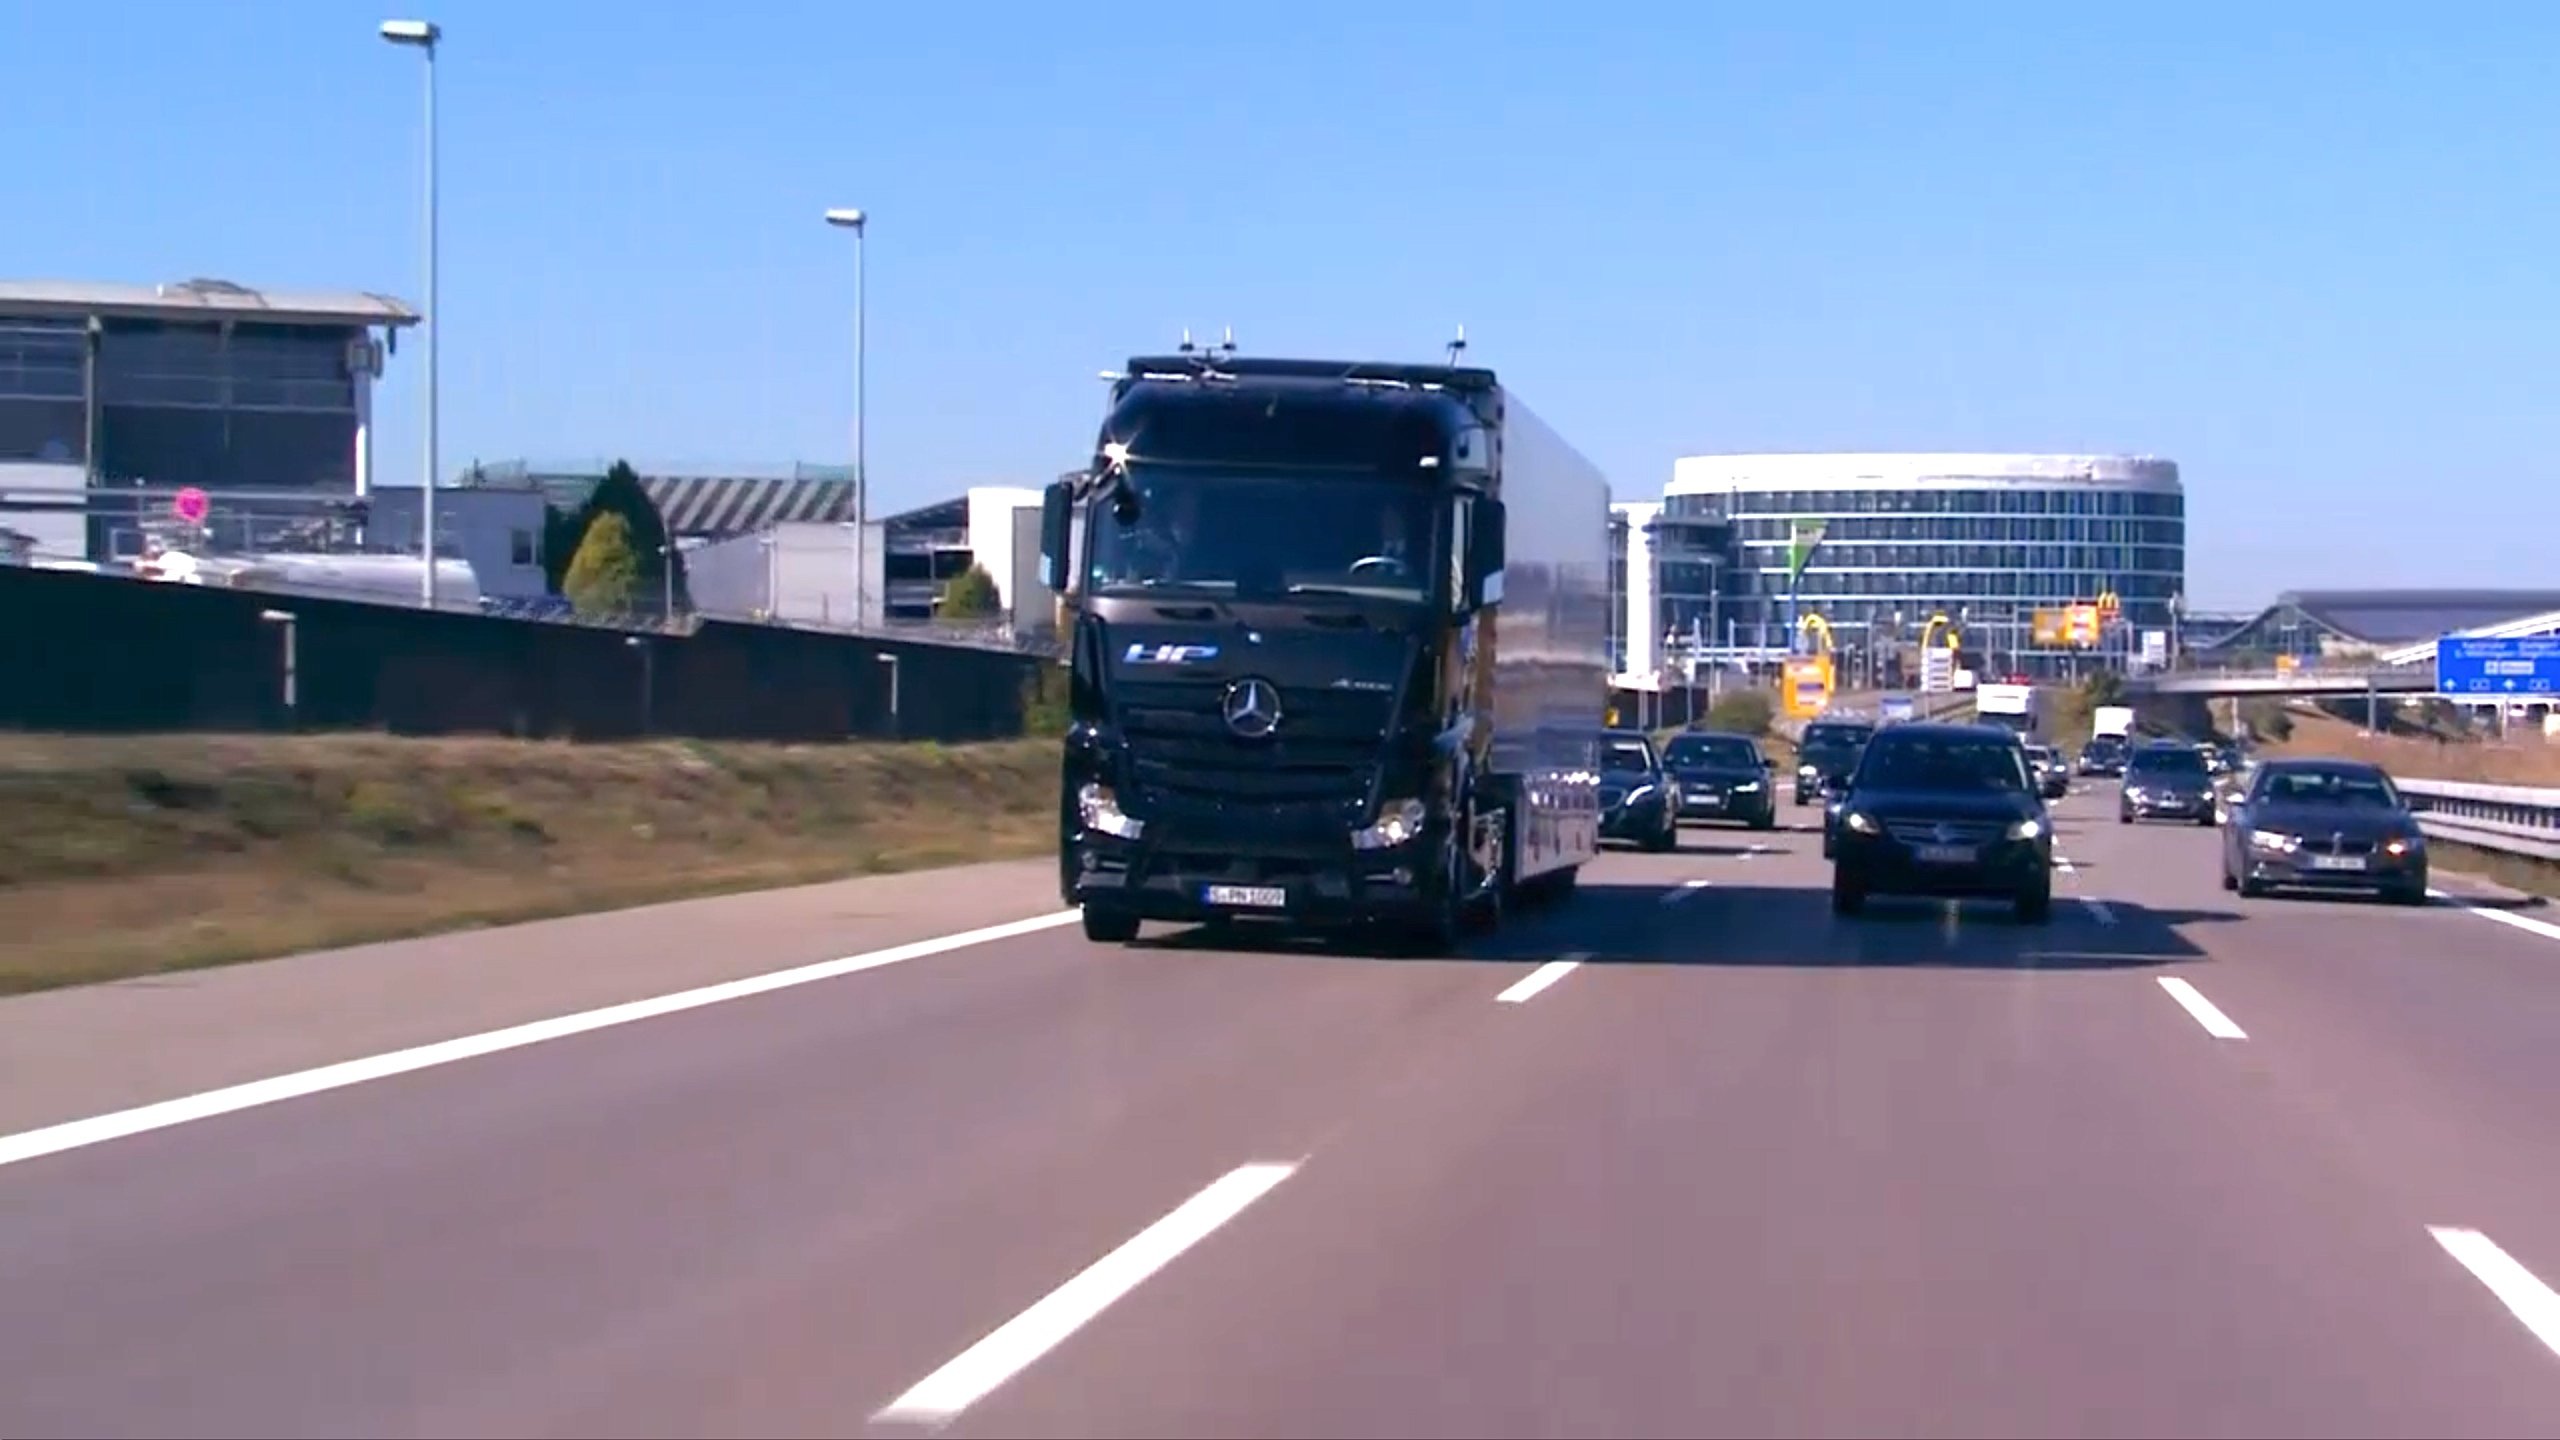 Autonom fahrender Truck von Daimler auf der A8 vor dem Flughafen Stuttgart: Eine halbe Stunde lang dauerte die erste autonome Fahrt eines Lkw in Deutschland im regulären Verkehr auf einer Autobahn.